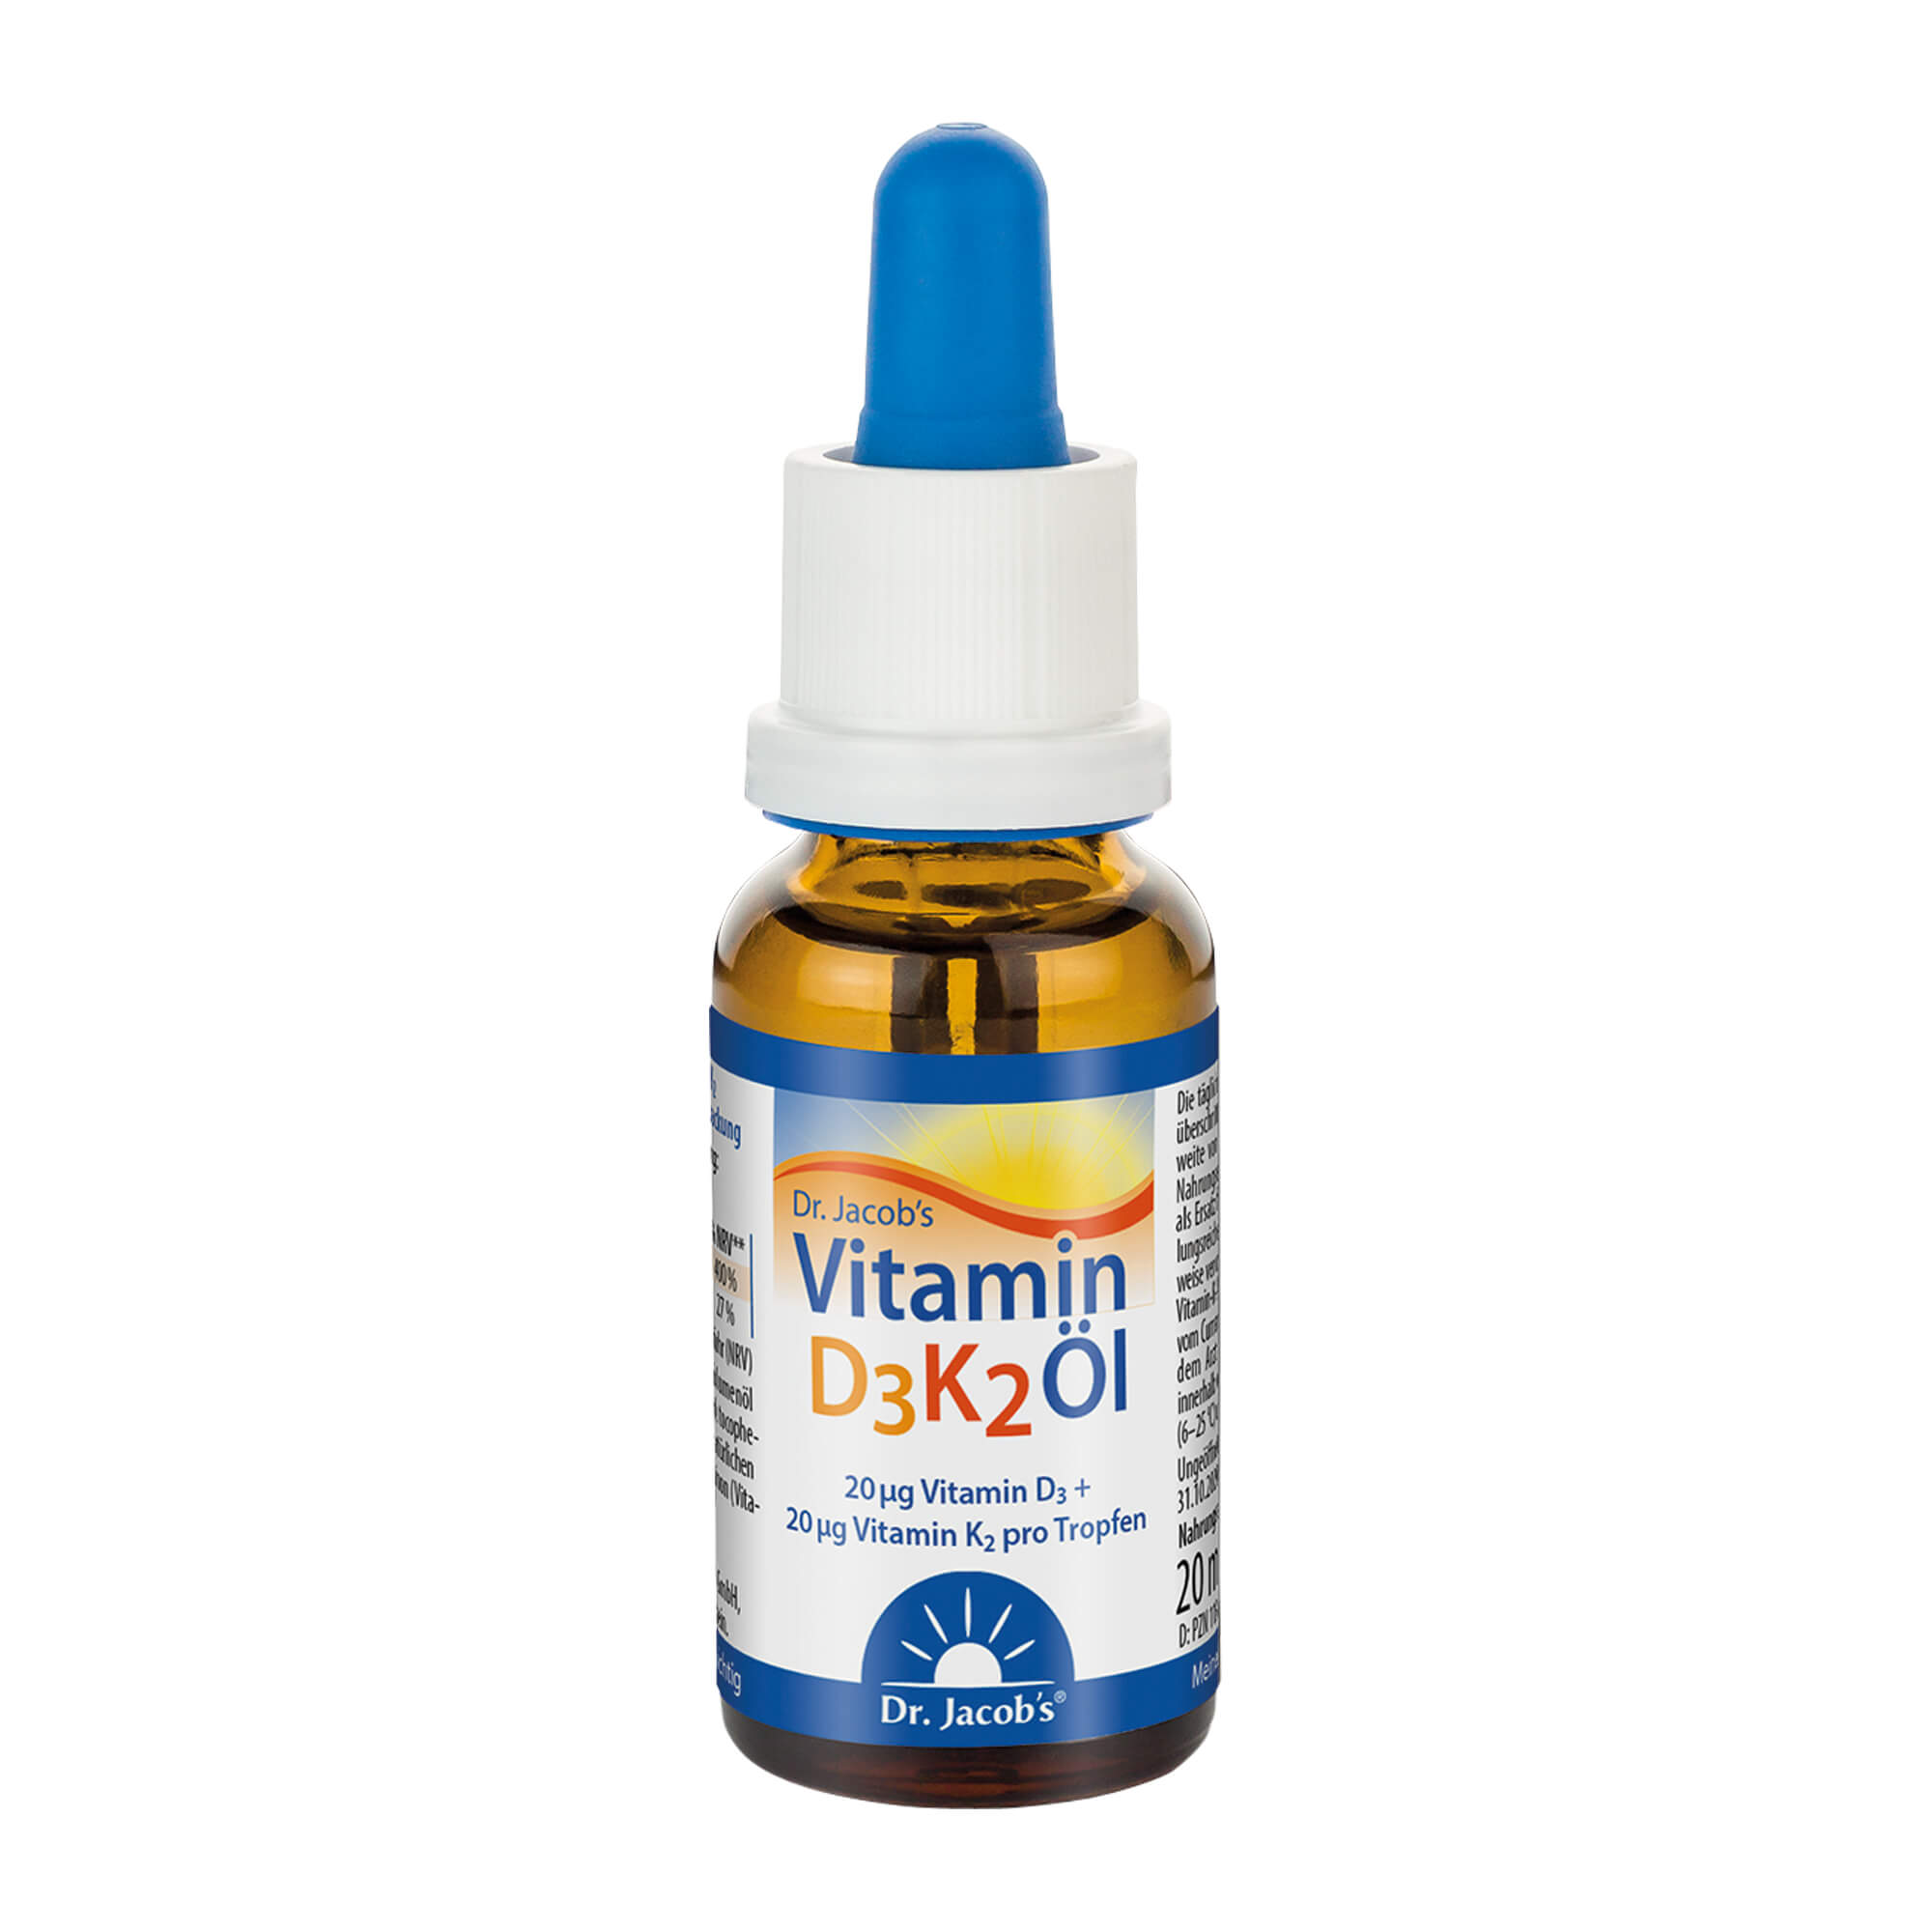 Nahrungsergänzungsmittel mit Vitamin D3 + K2. Für Knochen, Muskeln und Immunsystem.